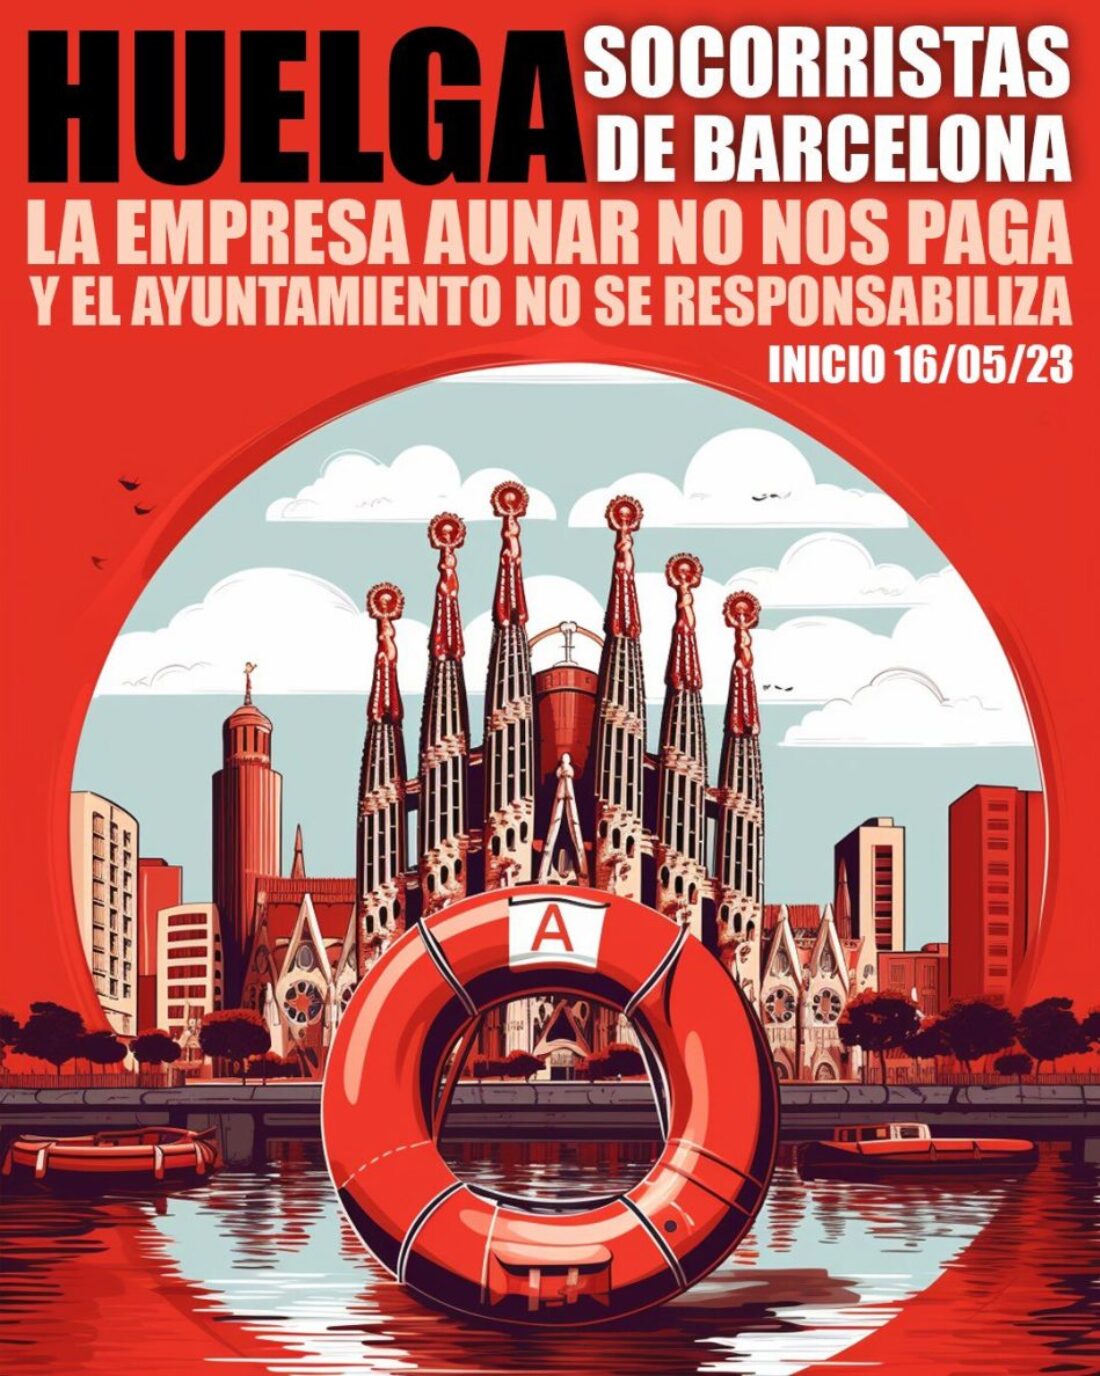 Se mantiene la huelga Socorristas Concentración martes 16 mayo 10.00h en Plaça Sant Jaume - Rojo y Negro